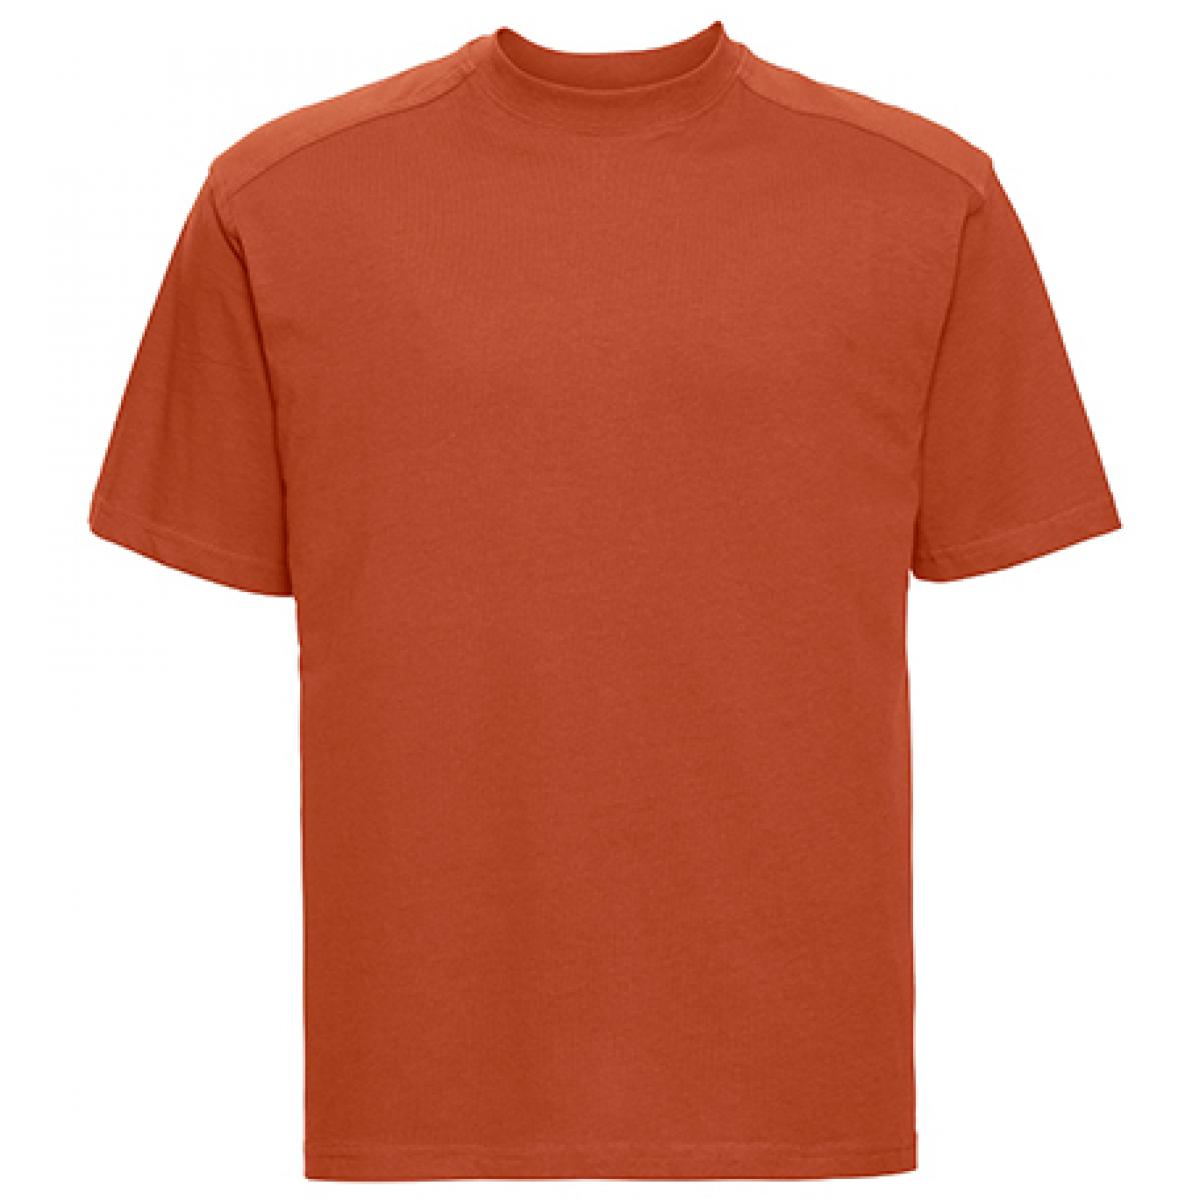 Hersteller: Russell Herstellernummer: R-010M-0 Artikelbezeichnung: Workwear Herren T-Shirt - Waschbar bis 60 °C -  bis 4XL Farbe: Orange